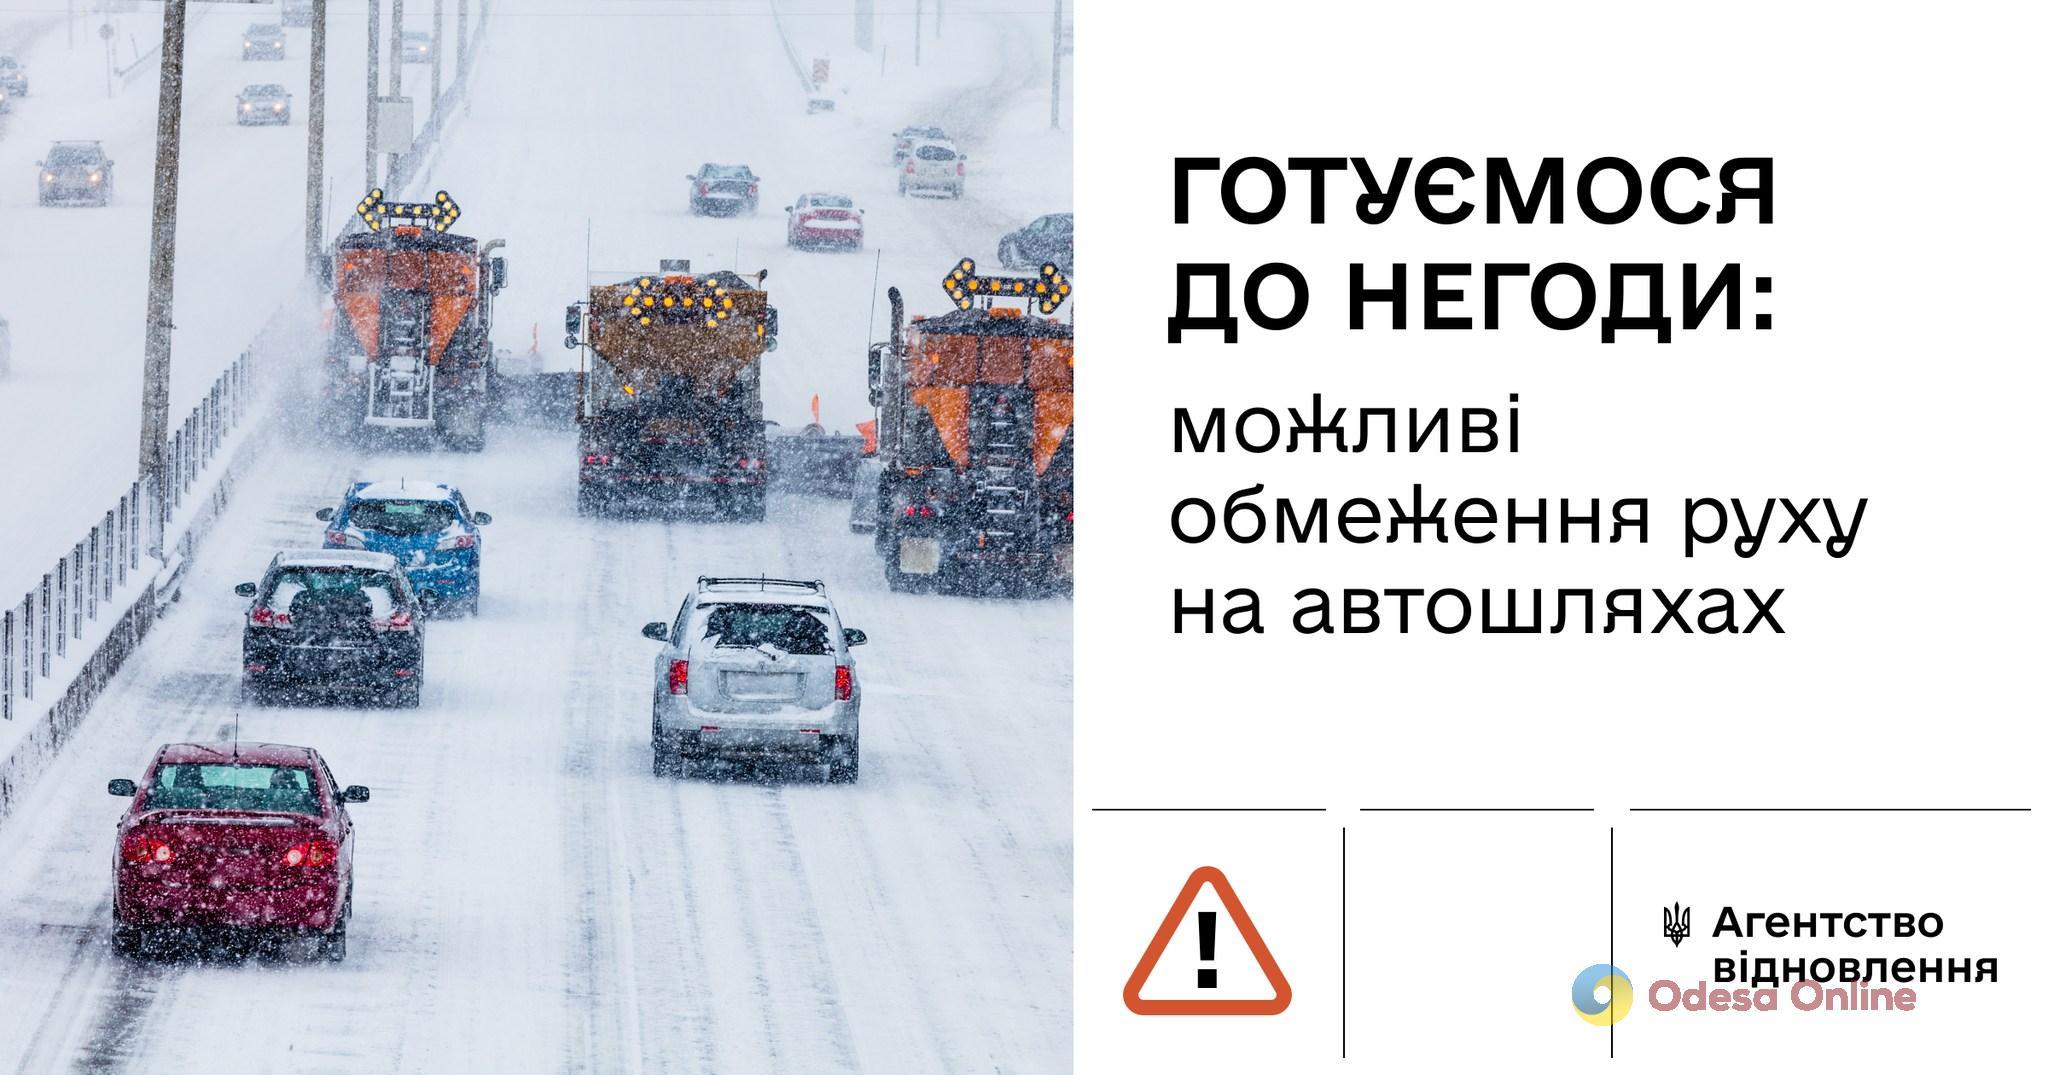 Одесситов предупредили о возможном ограничении движения на дорогах из-за непогоды